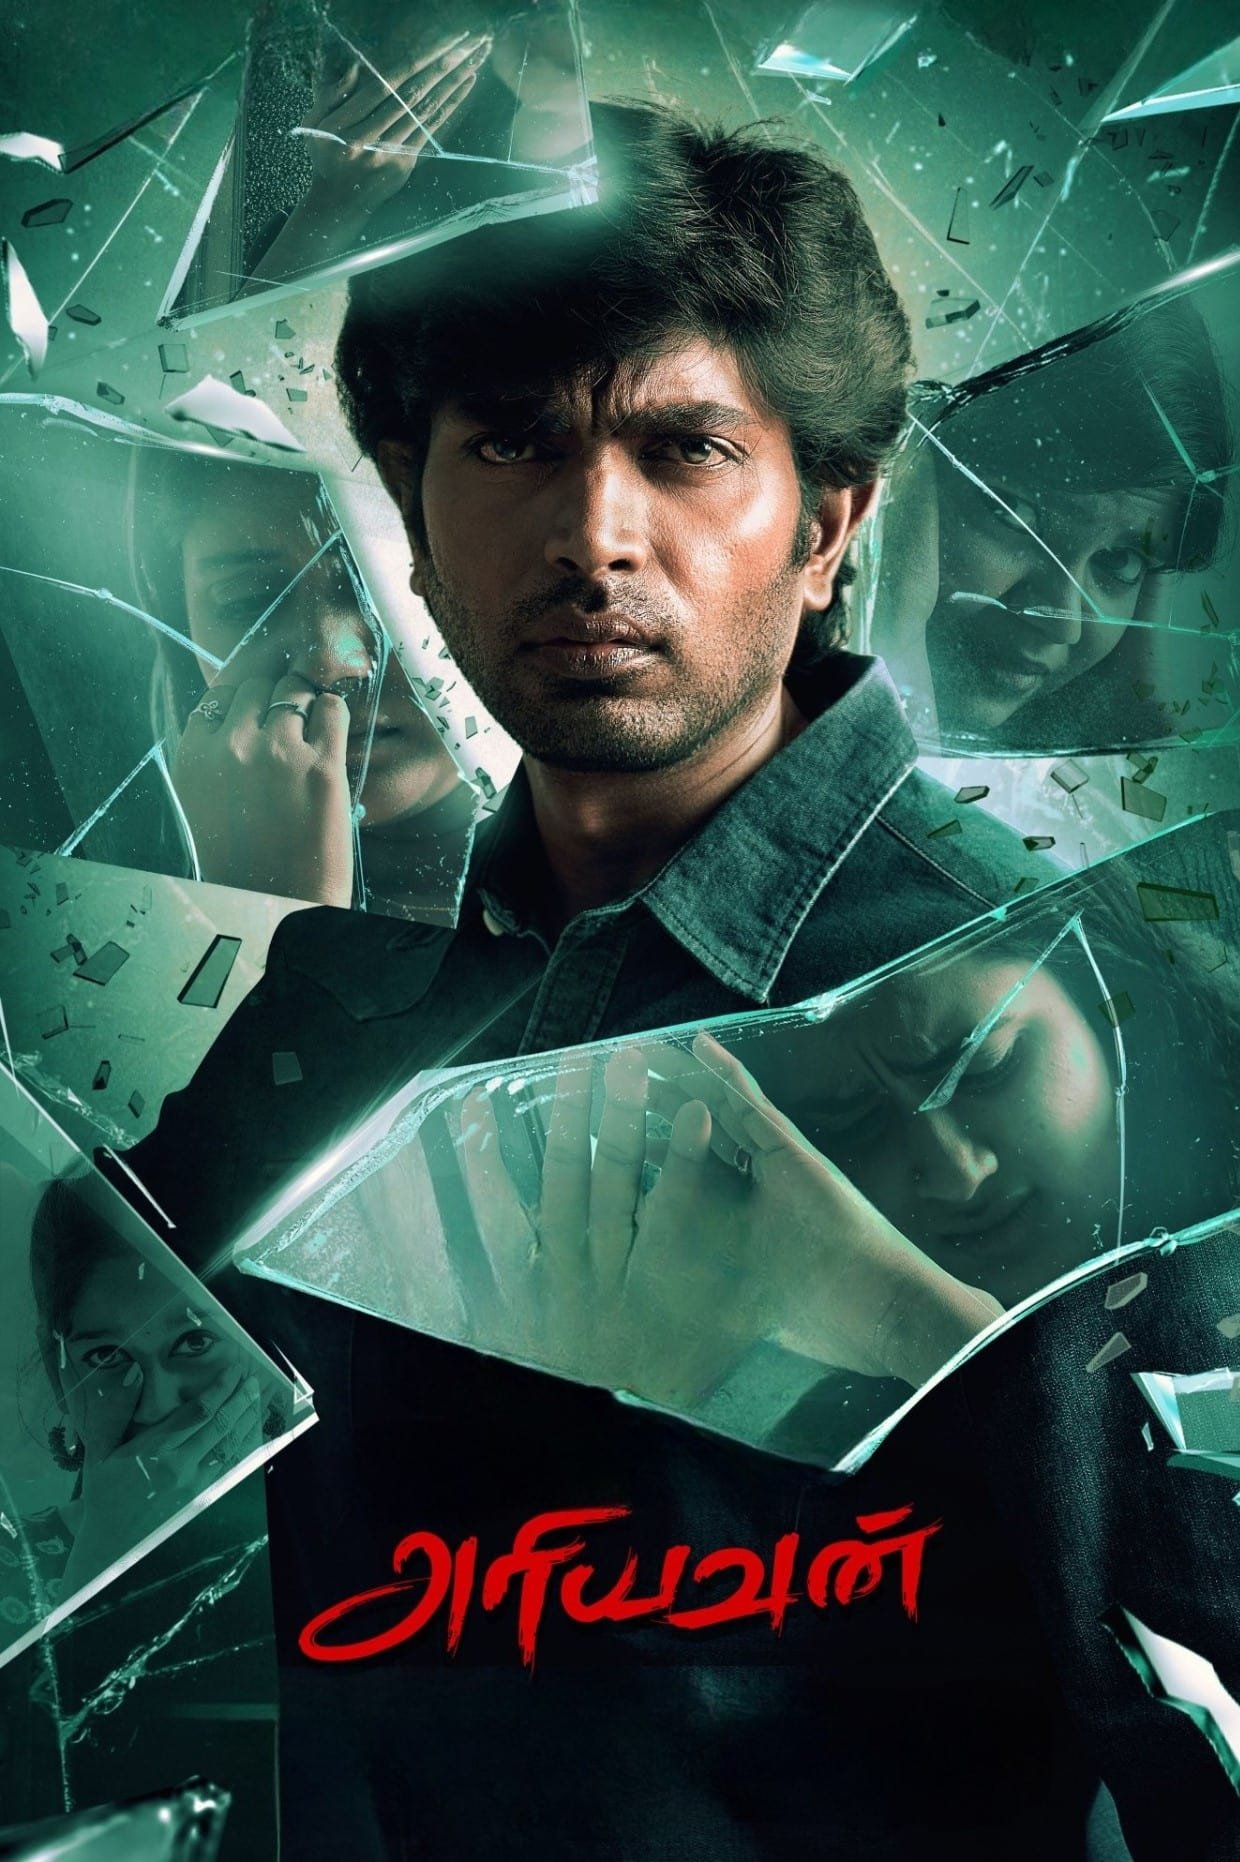 Poster for the movie "Ariyavan"